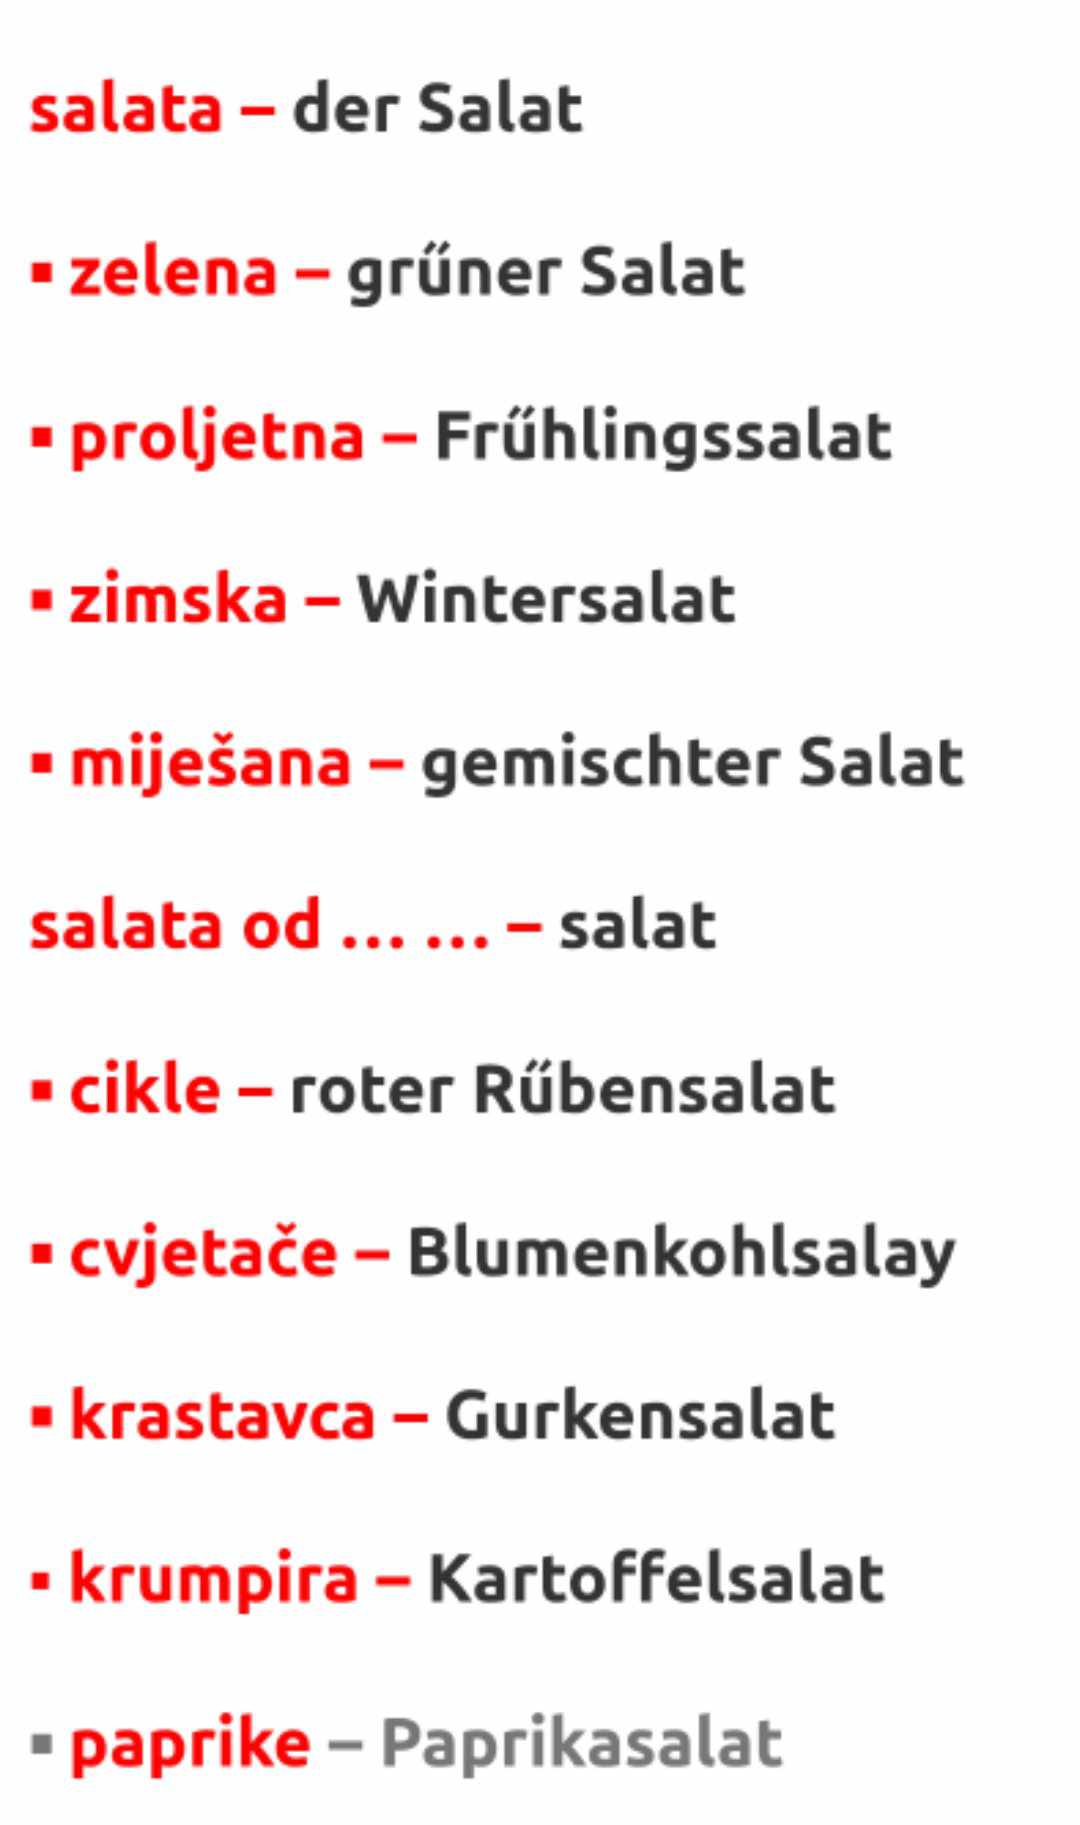 salate - SALATE – SALATE